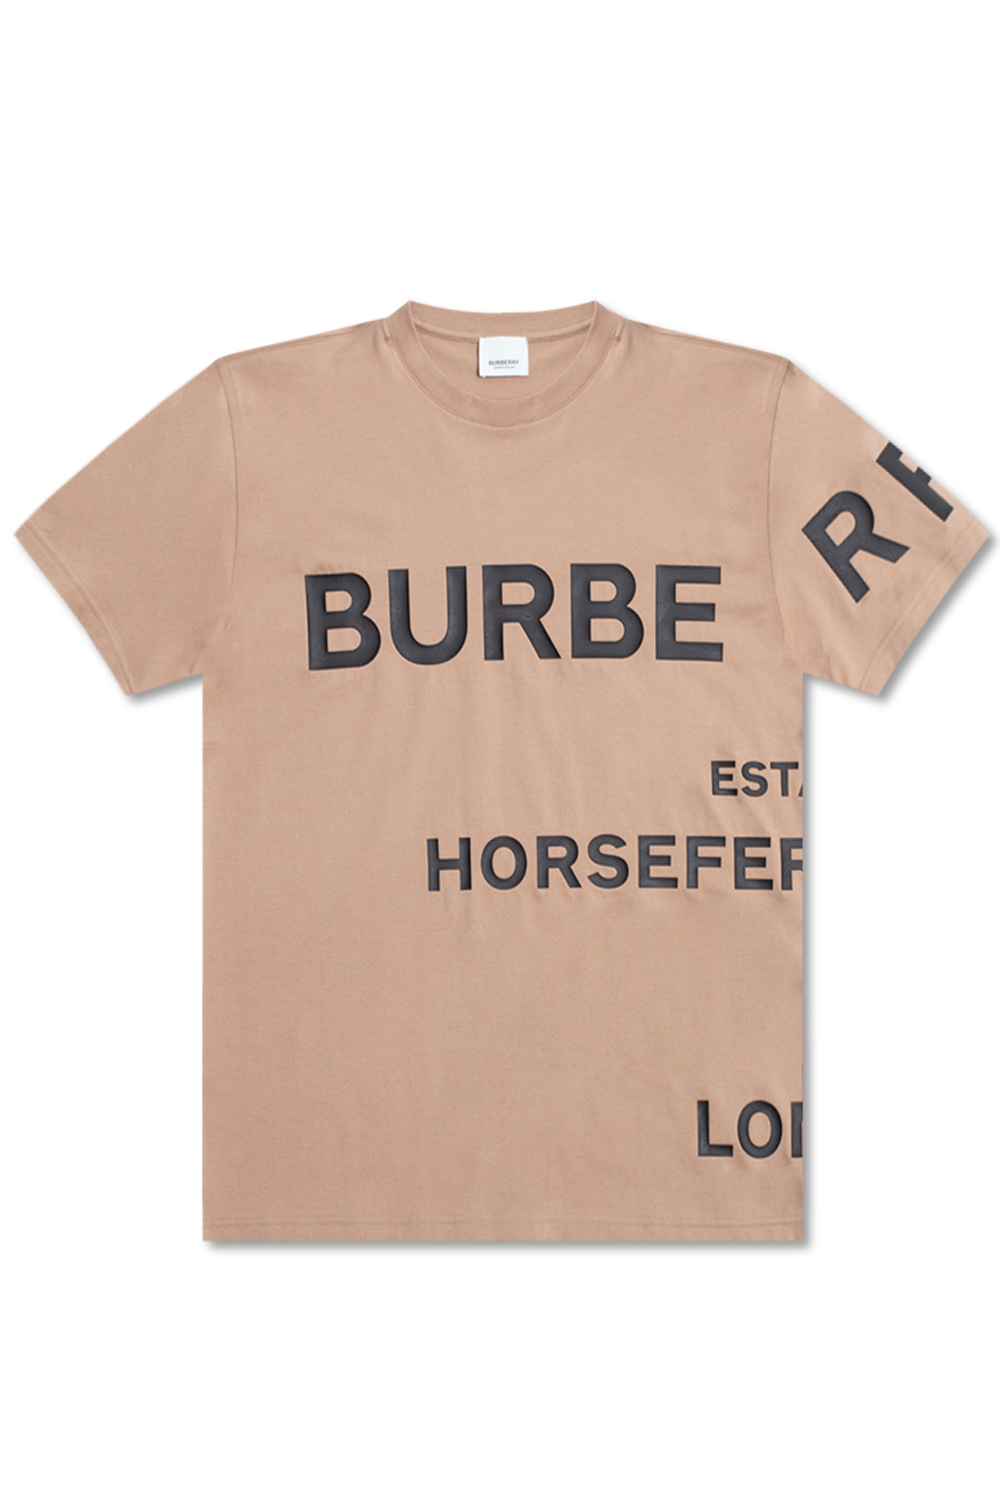 Burberry Women's Carrick T-Shirt